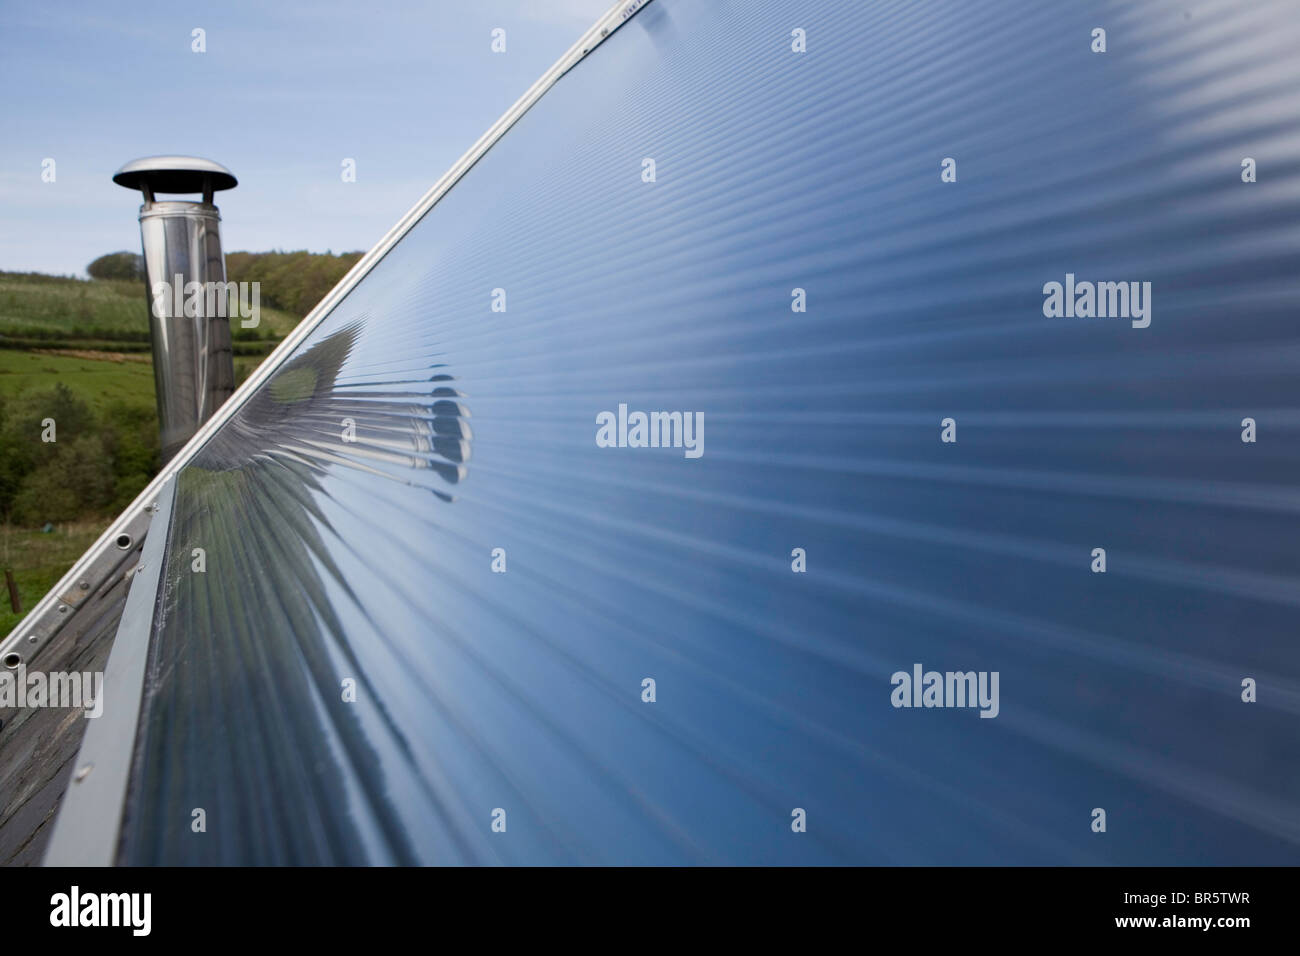 Un solare pannello termico su un tetto. Riscaldamento di acqua solare sistemi utilizzano il calore dal sole per lavorare al fianco di convenzionali di riscaldamento dell'acqua. Foto Stock